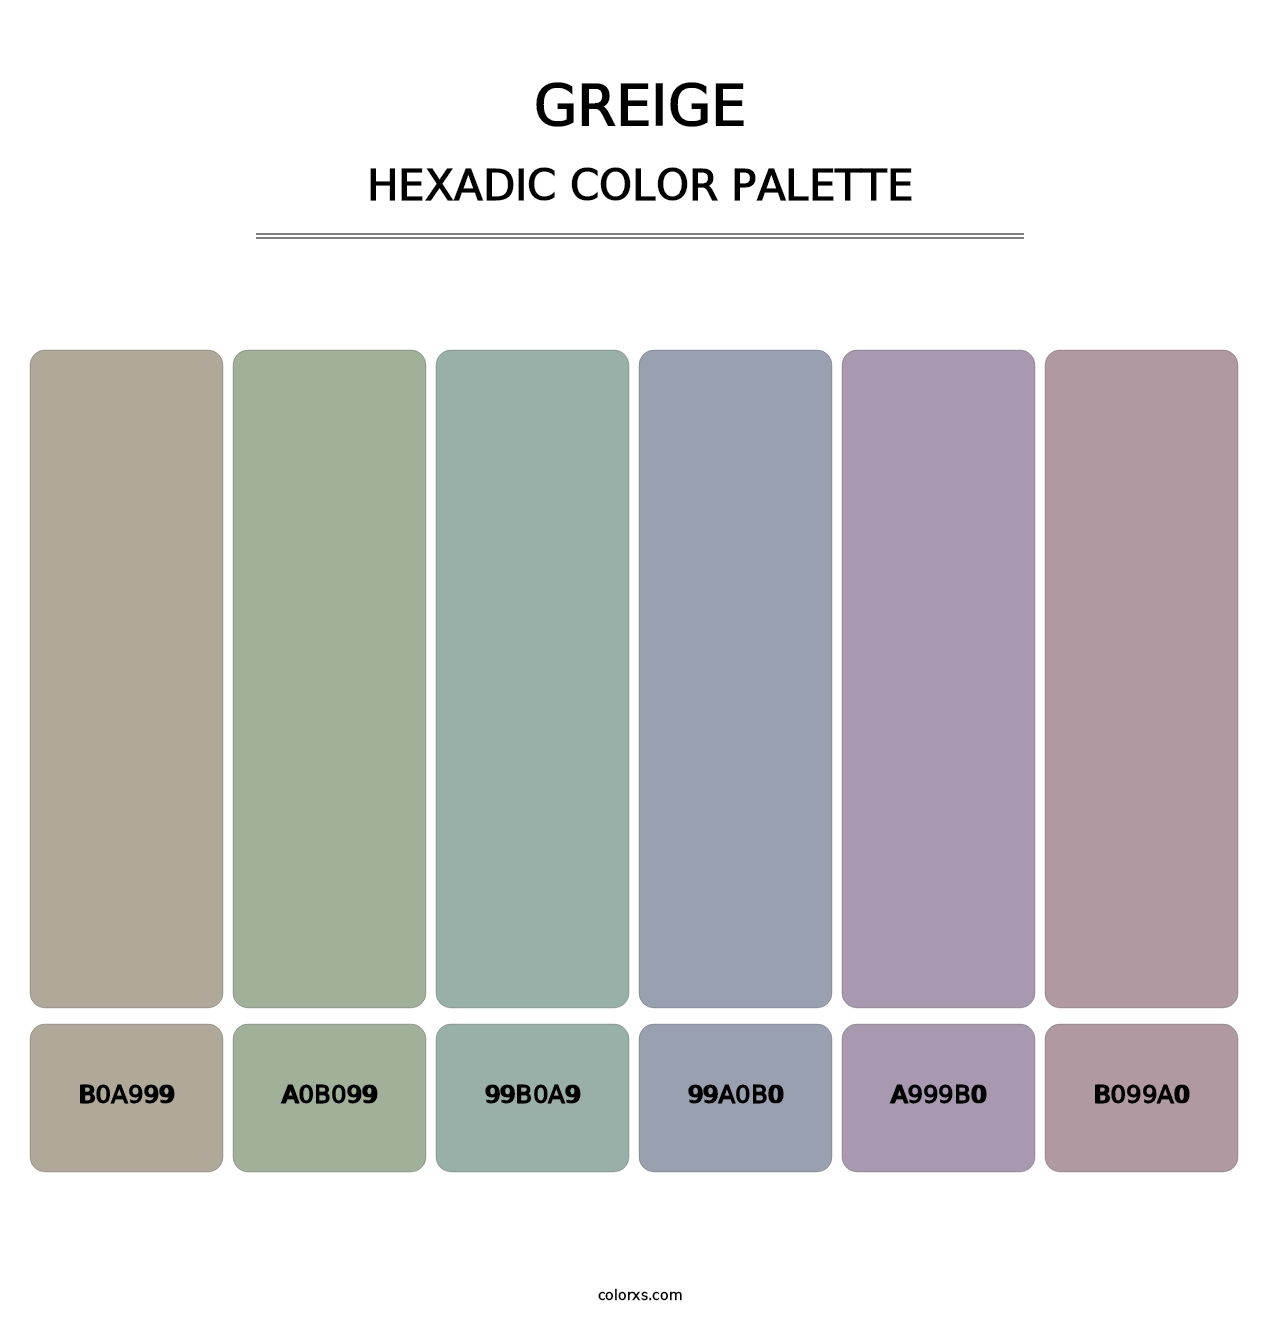 Greige - Hexadic Color Palette